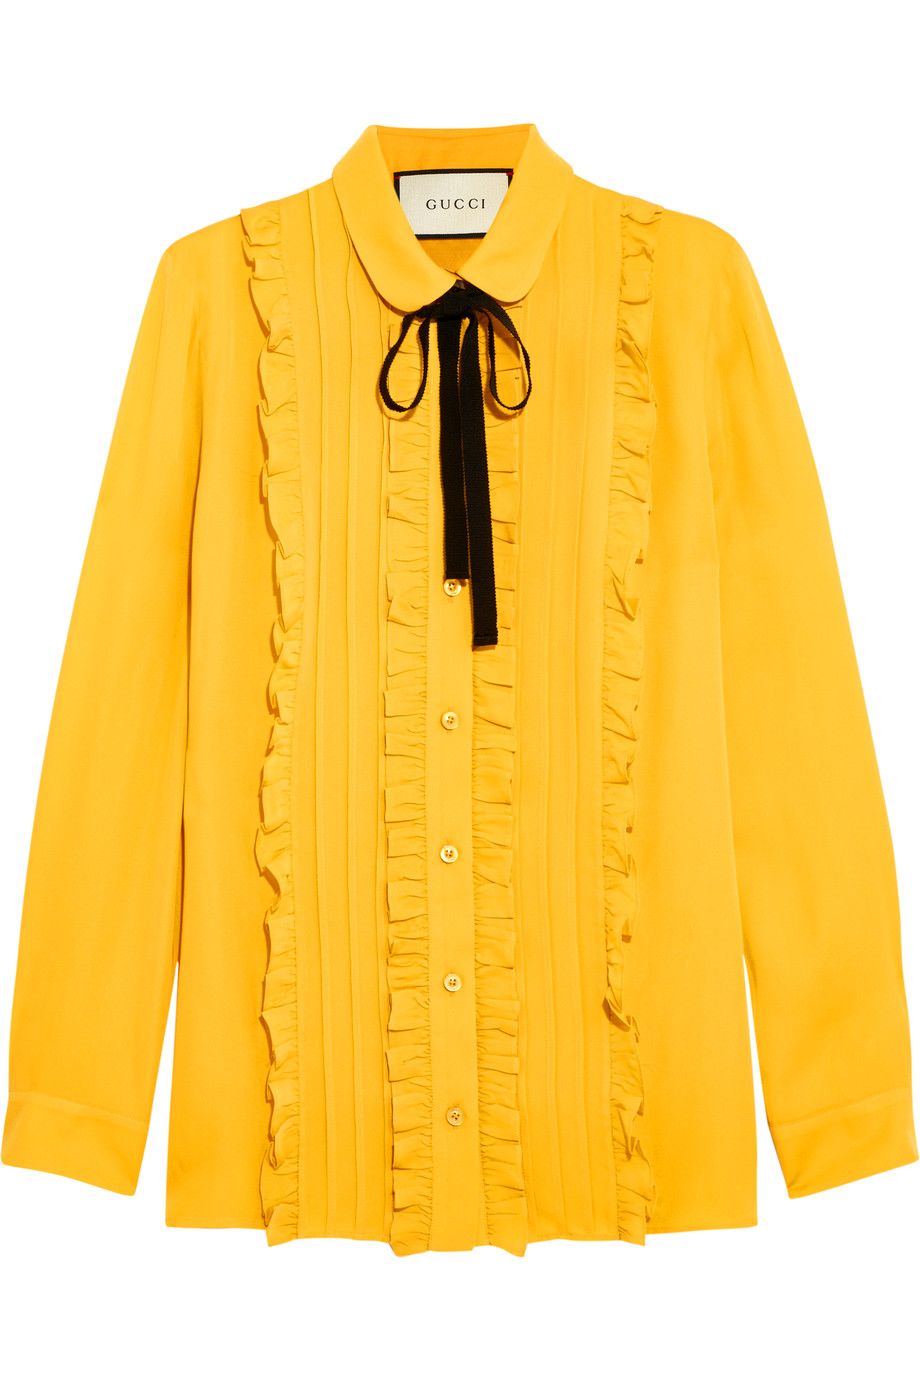 Festa della donna 2017: look giallo mimosa con la camicia di Gucci